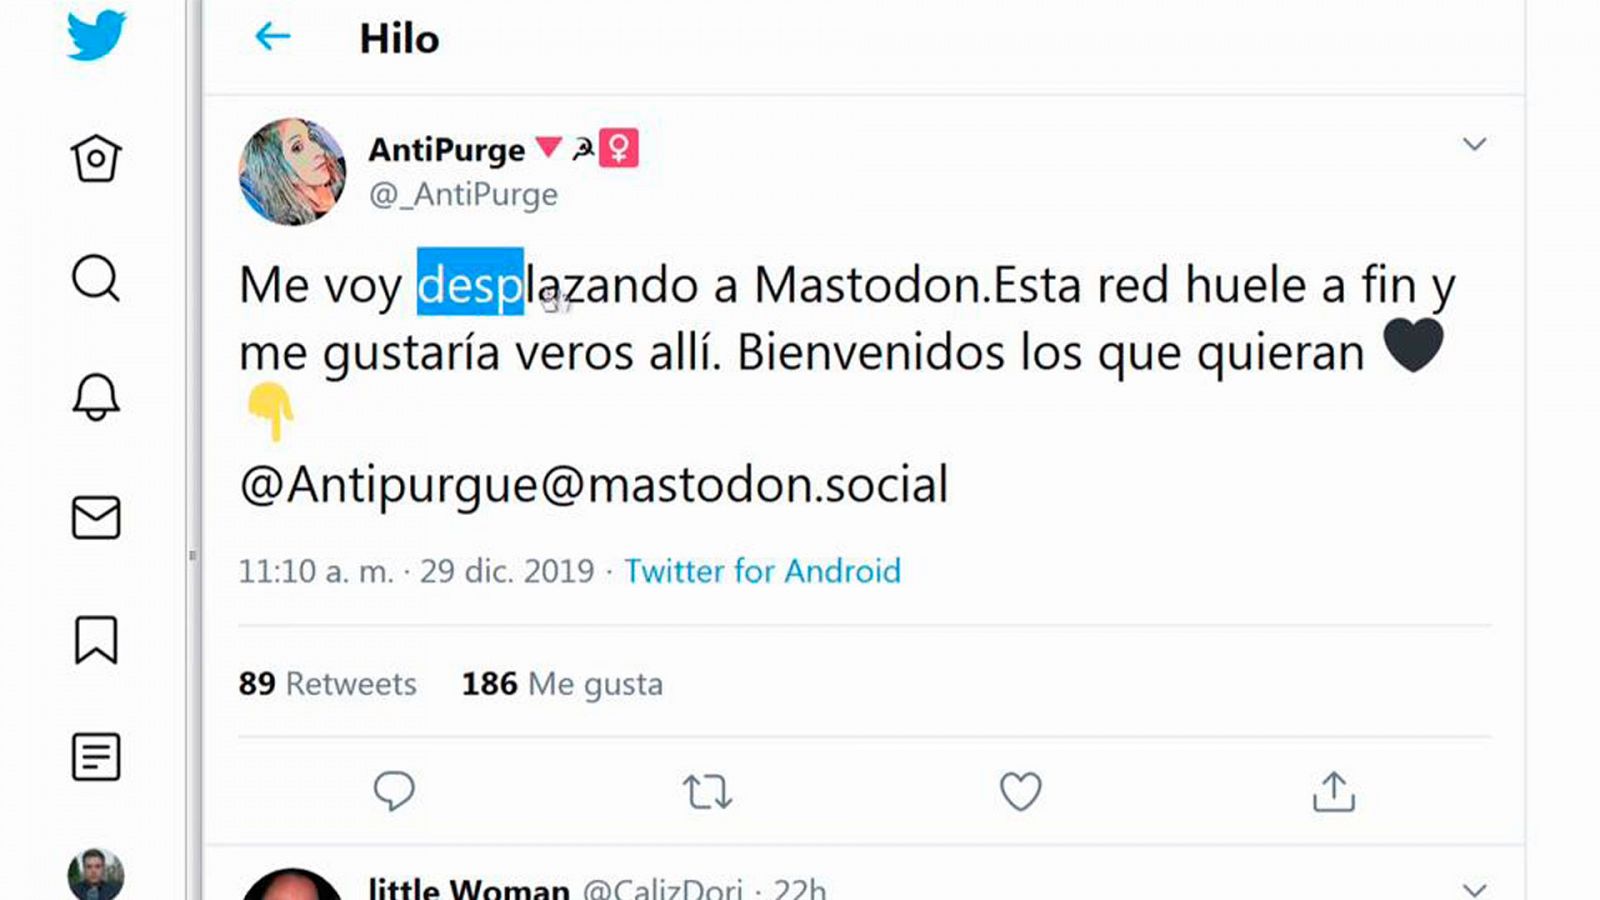 La red social 'Mastodon' registra un aumento de usuarios procedentes de Twitter ante las quejas de censura - RTVE.es